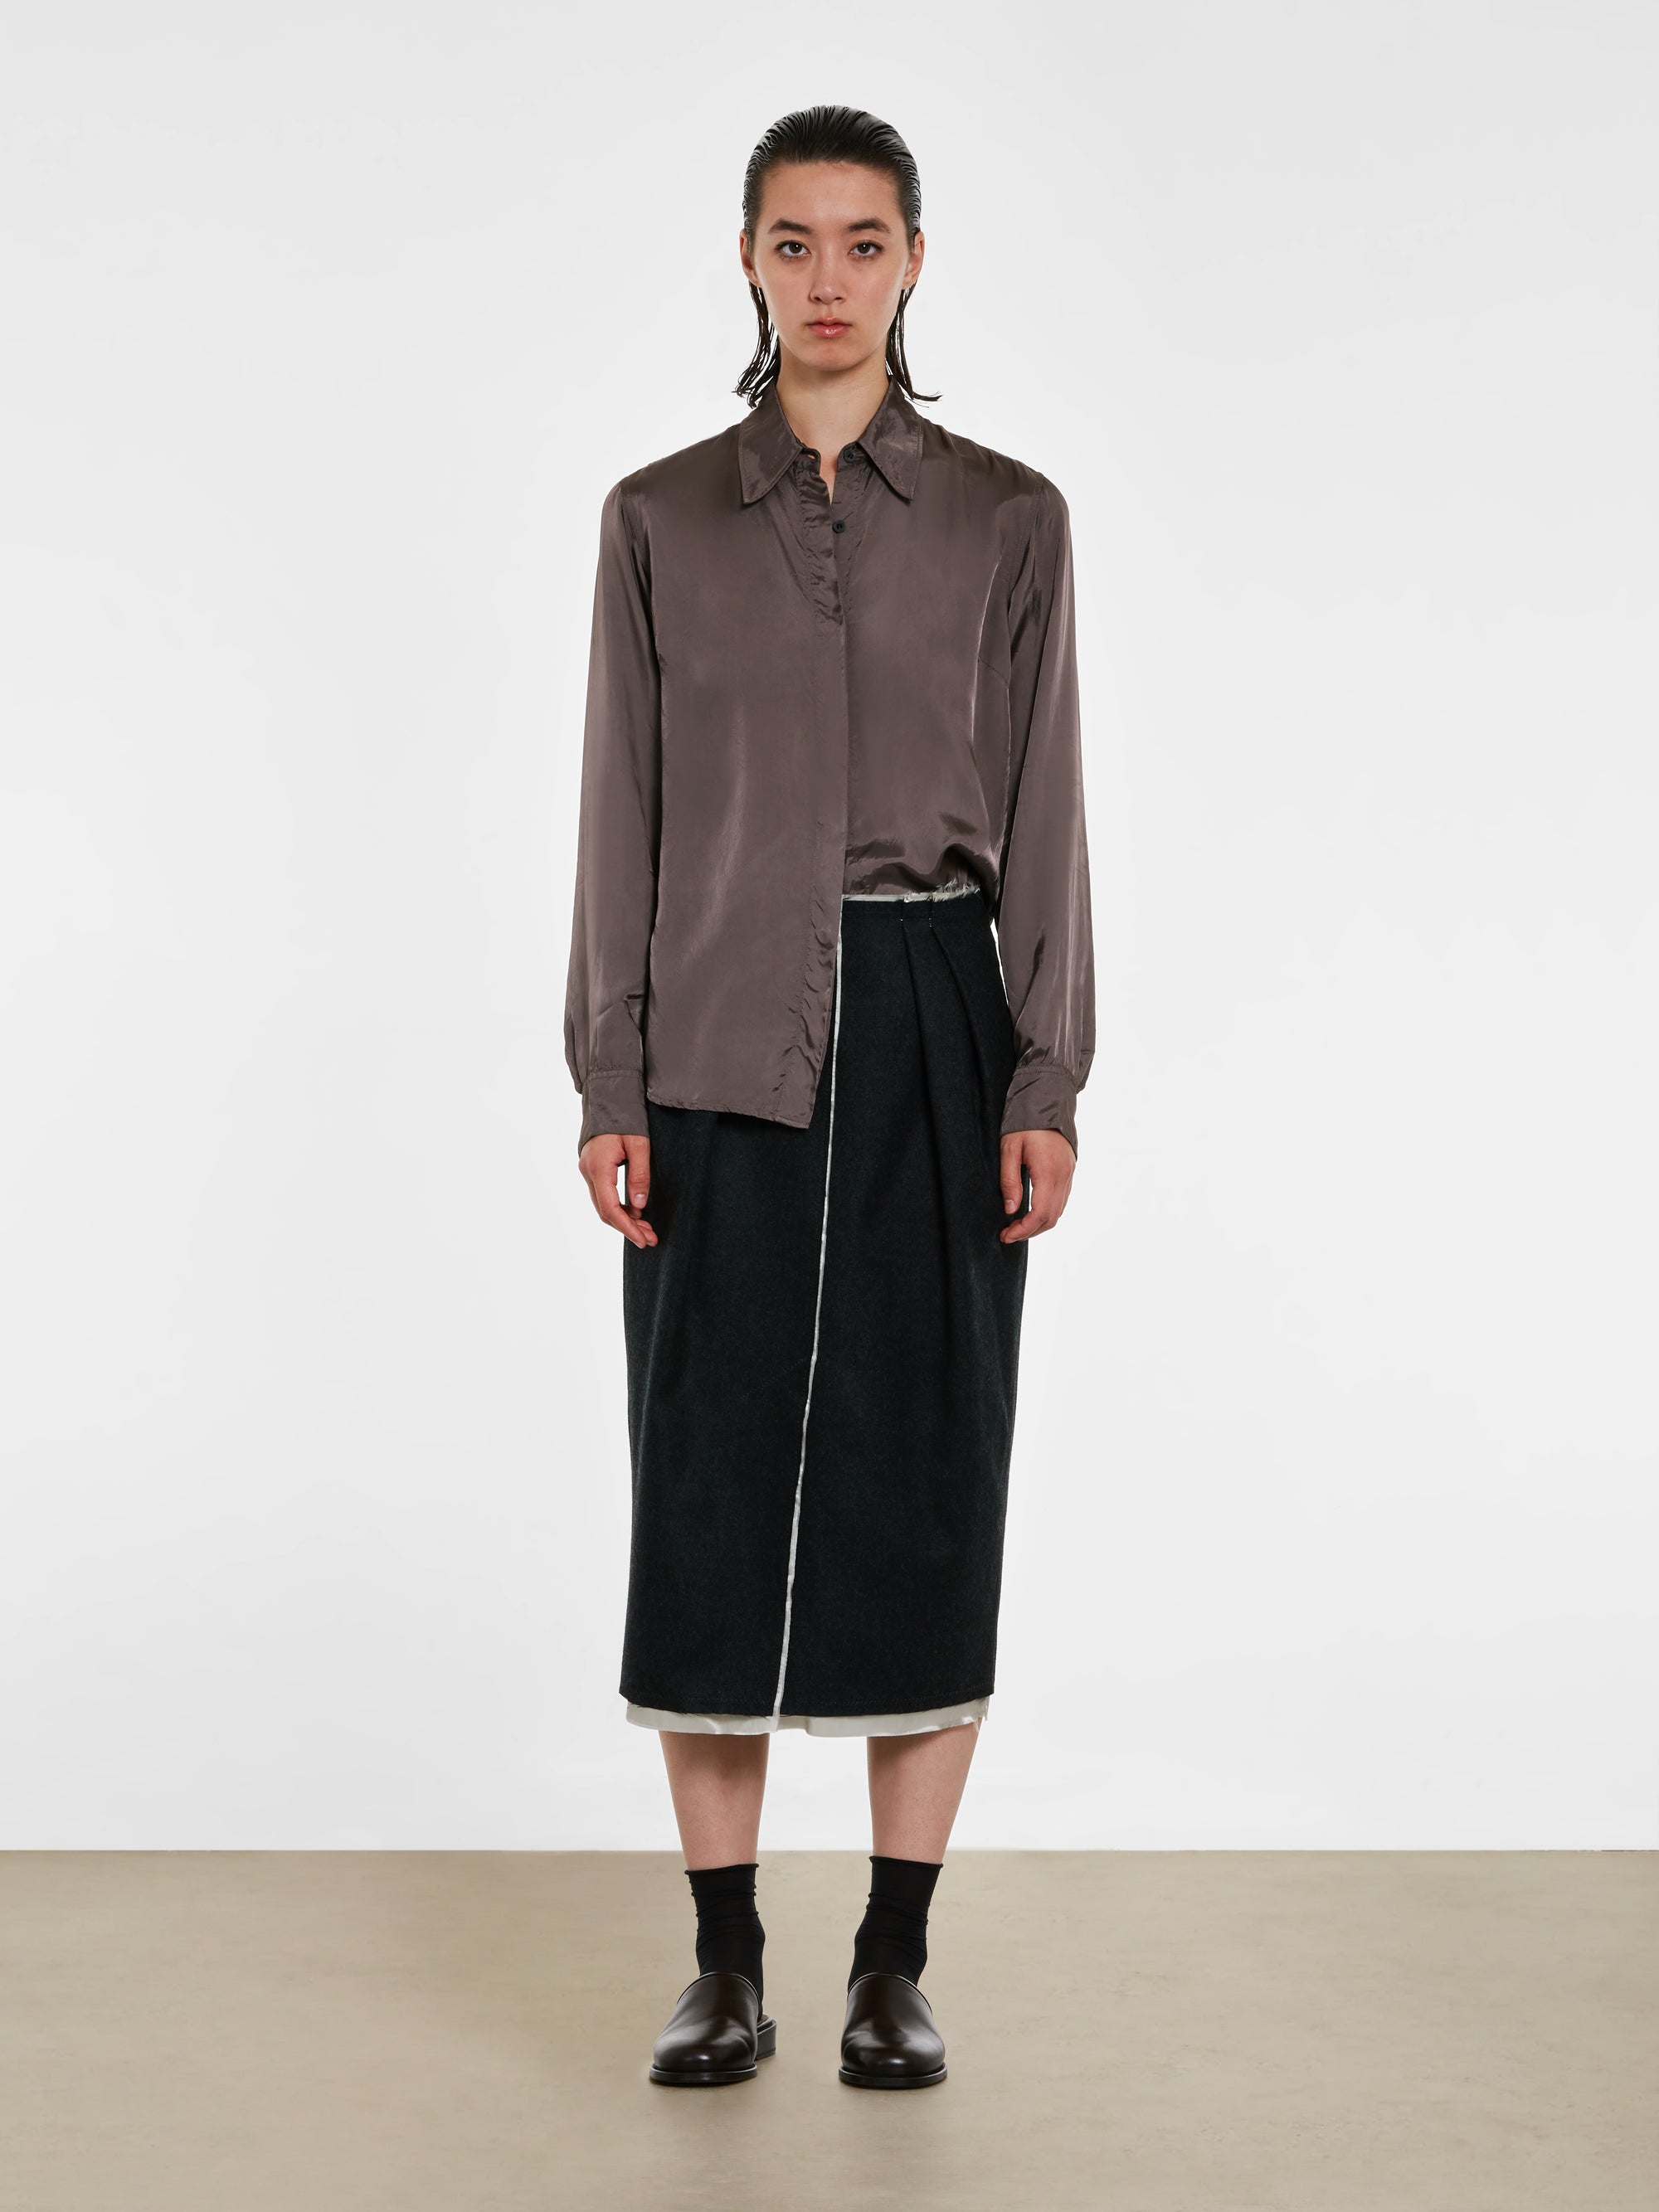 Dries Van Noten - Women’s Front Slit Skirt - (Anthracite) view 4